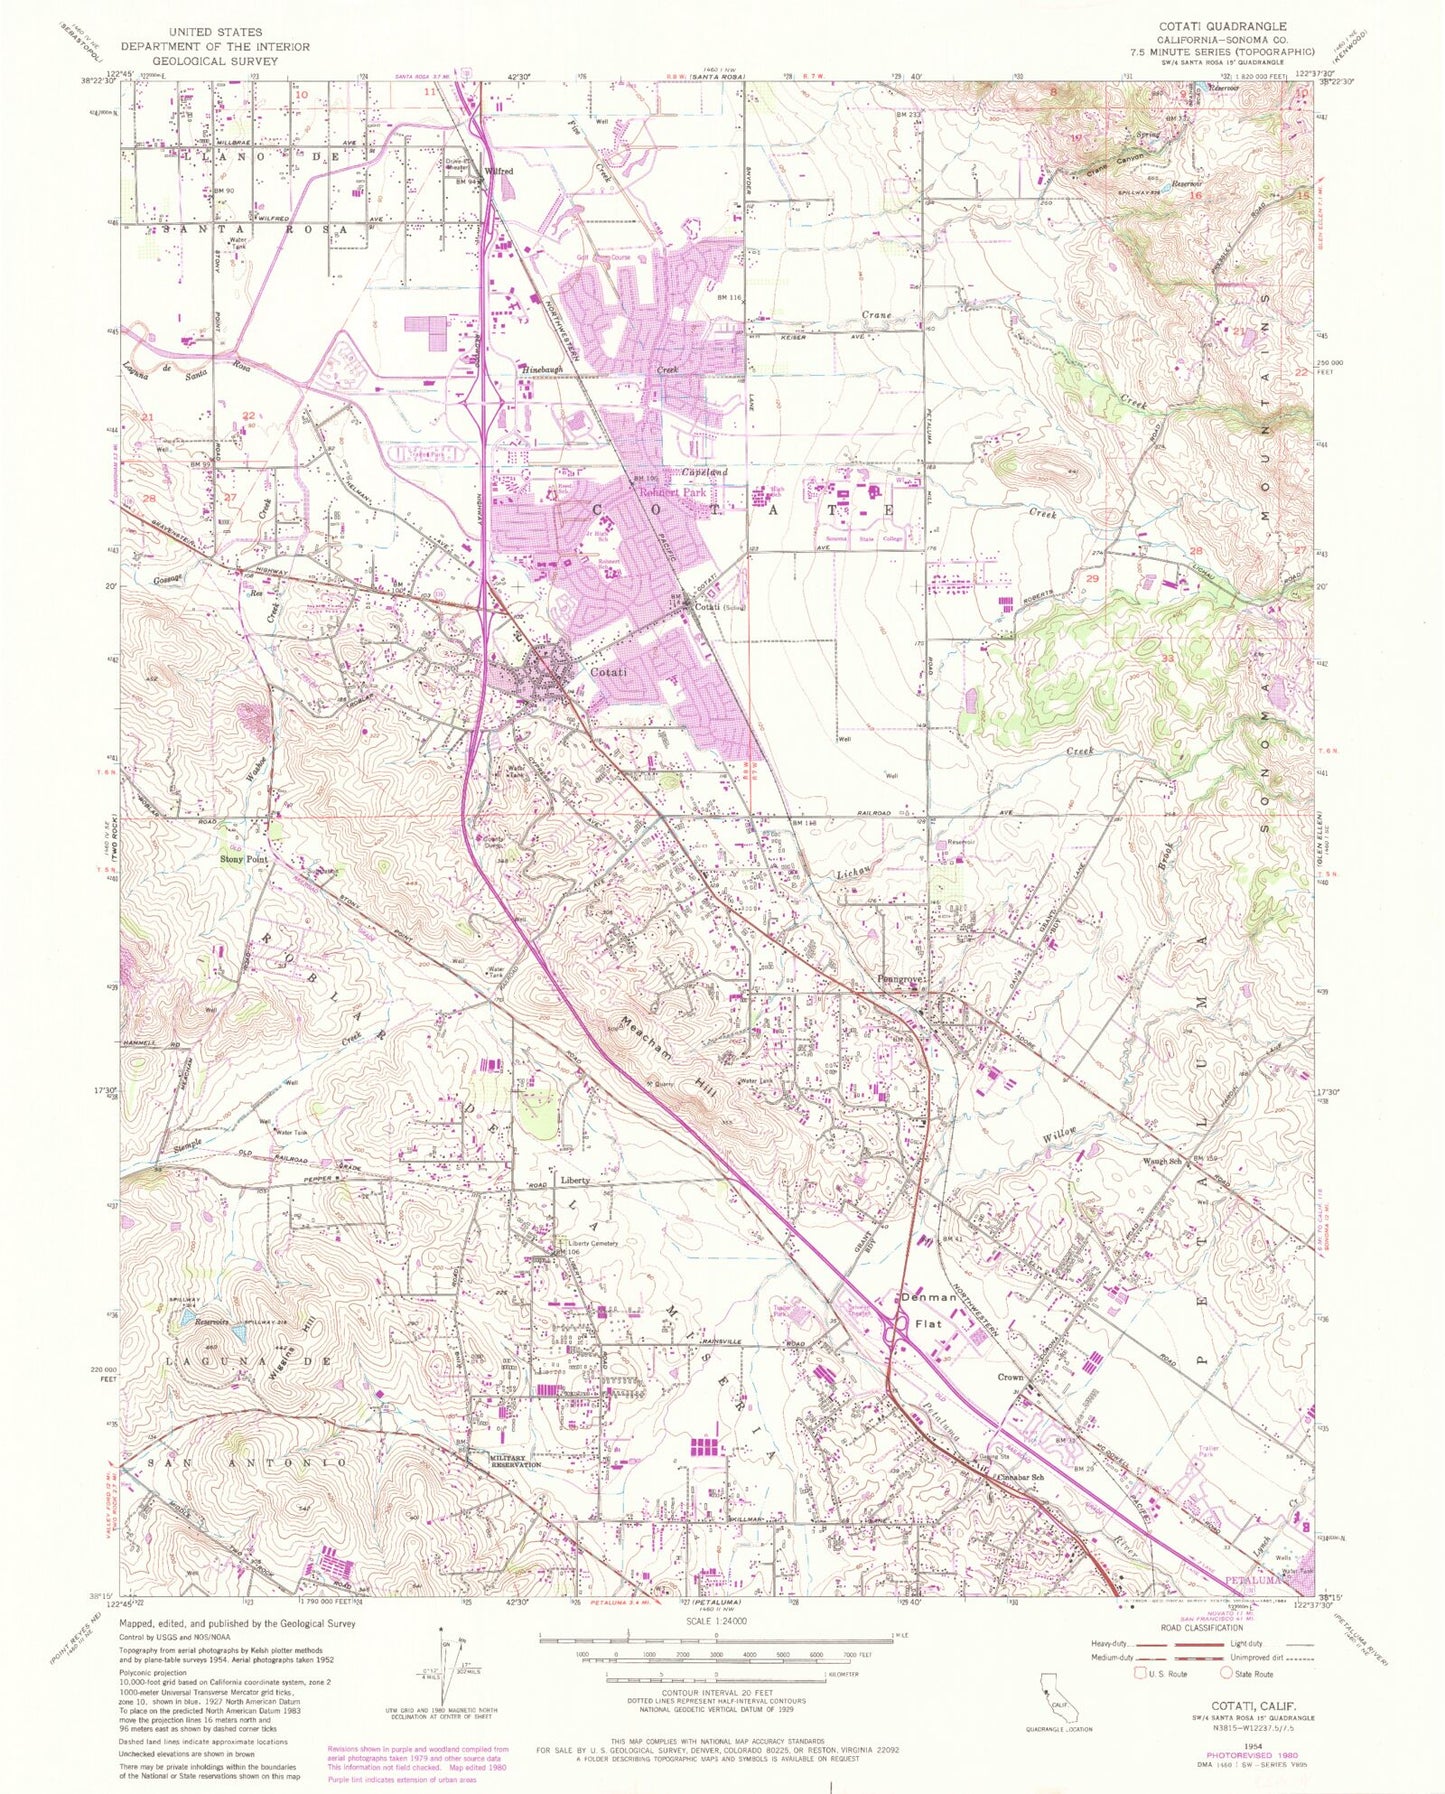 Classic USGS Cotati California 7.5'x7.5' Topo Map Image